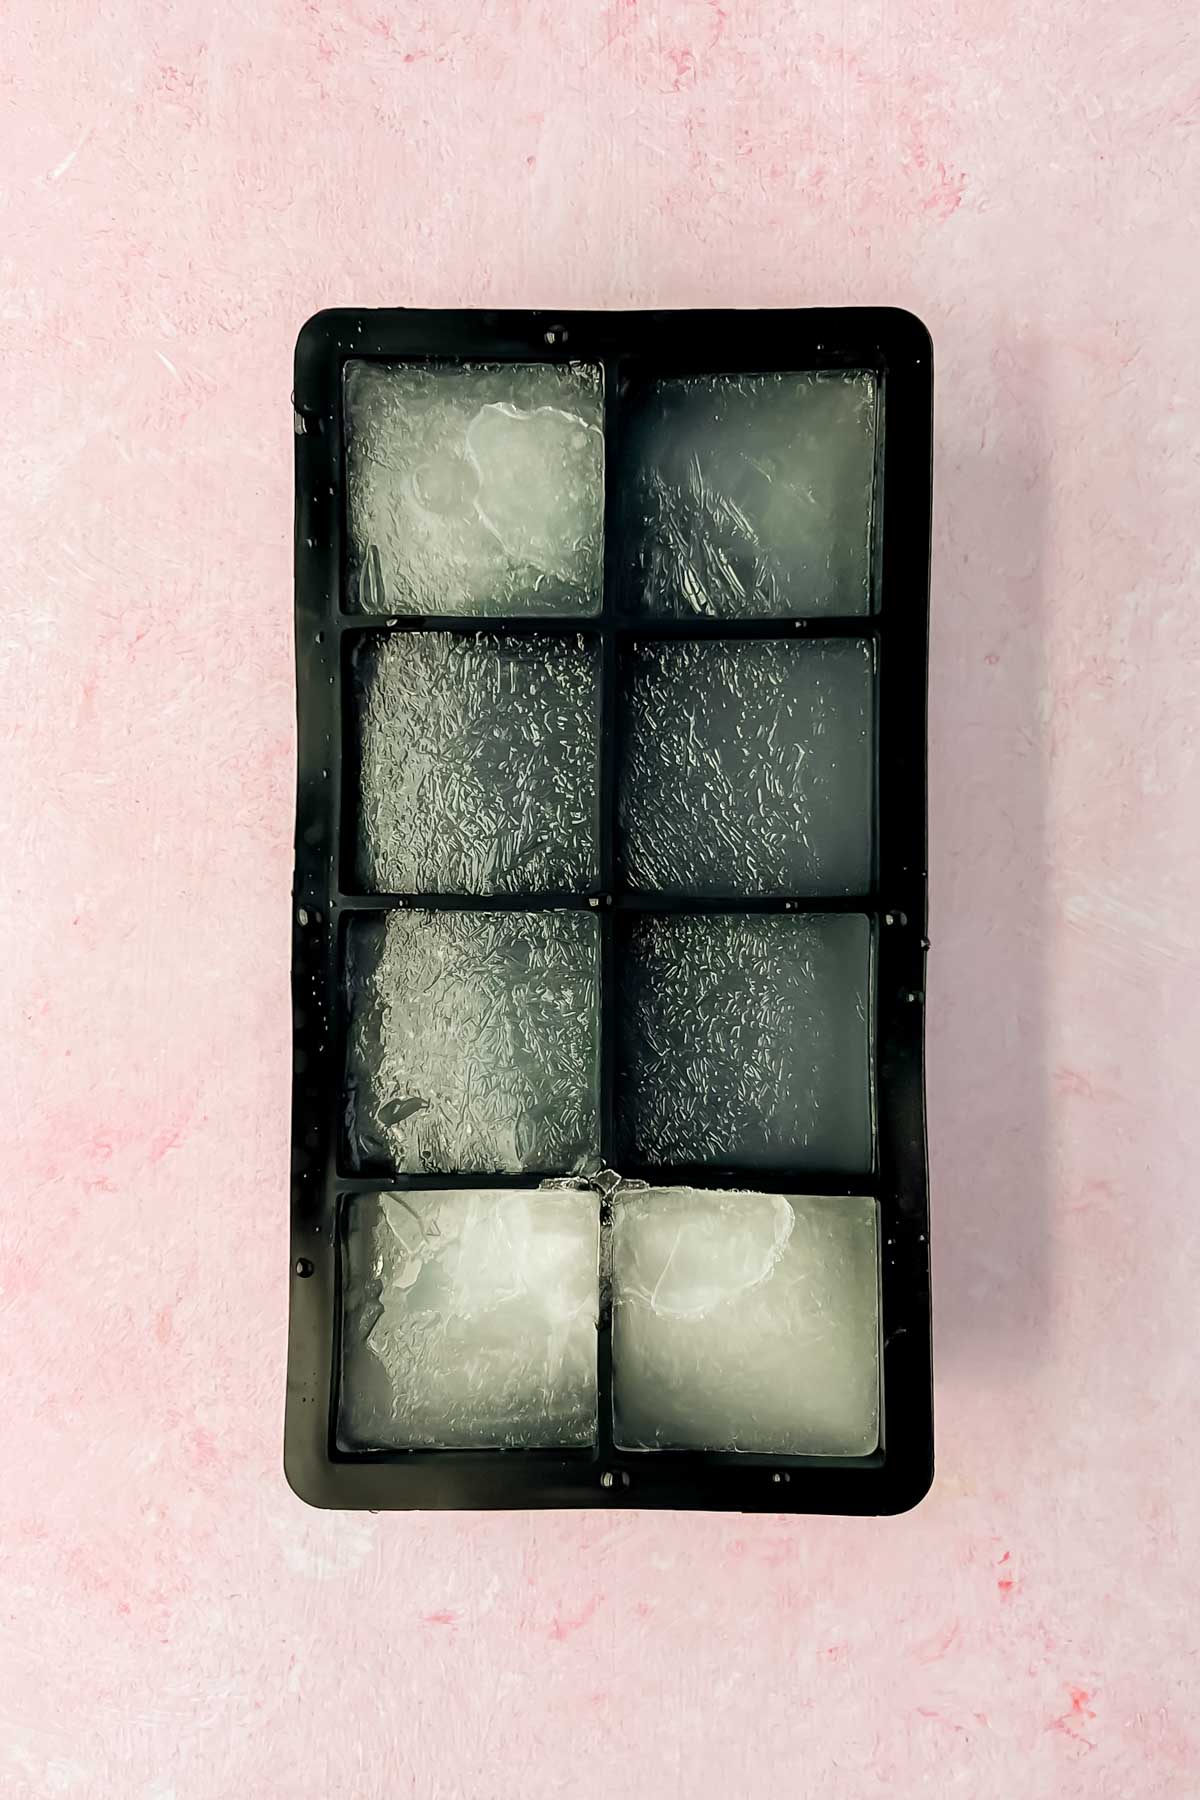 lemonade frozen in ice cube tray.